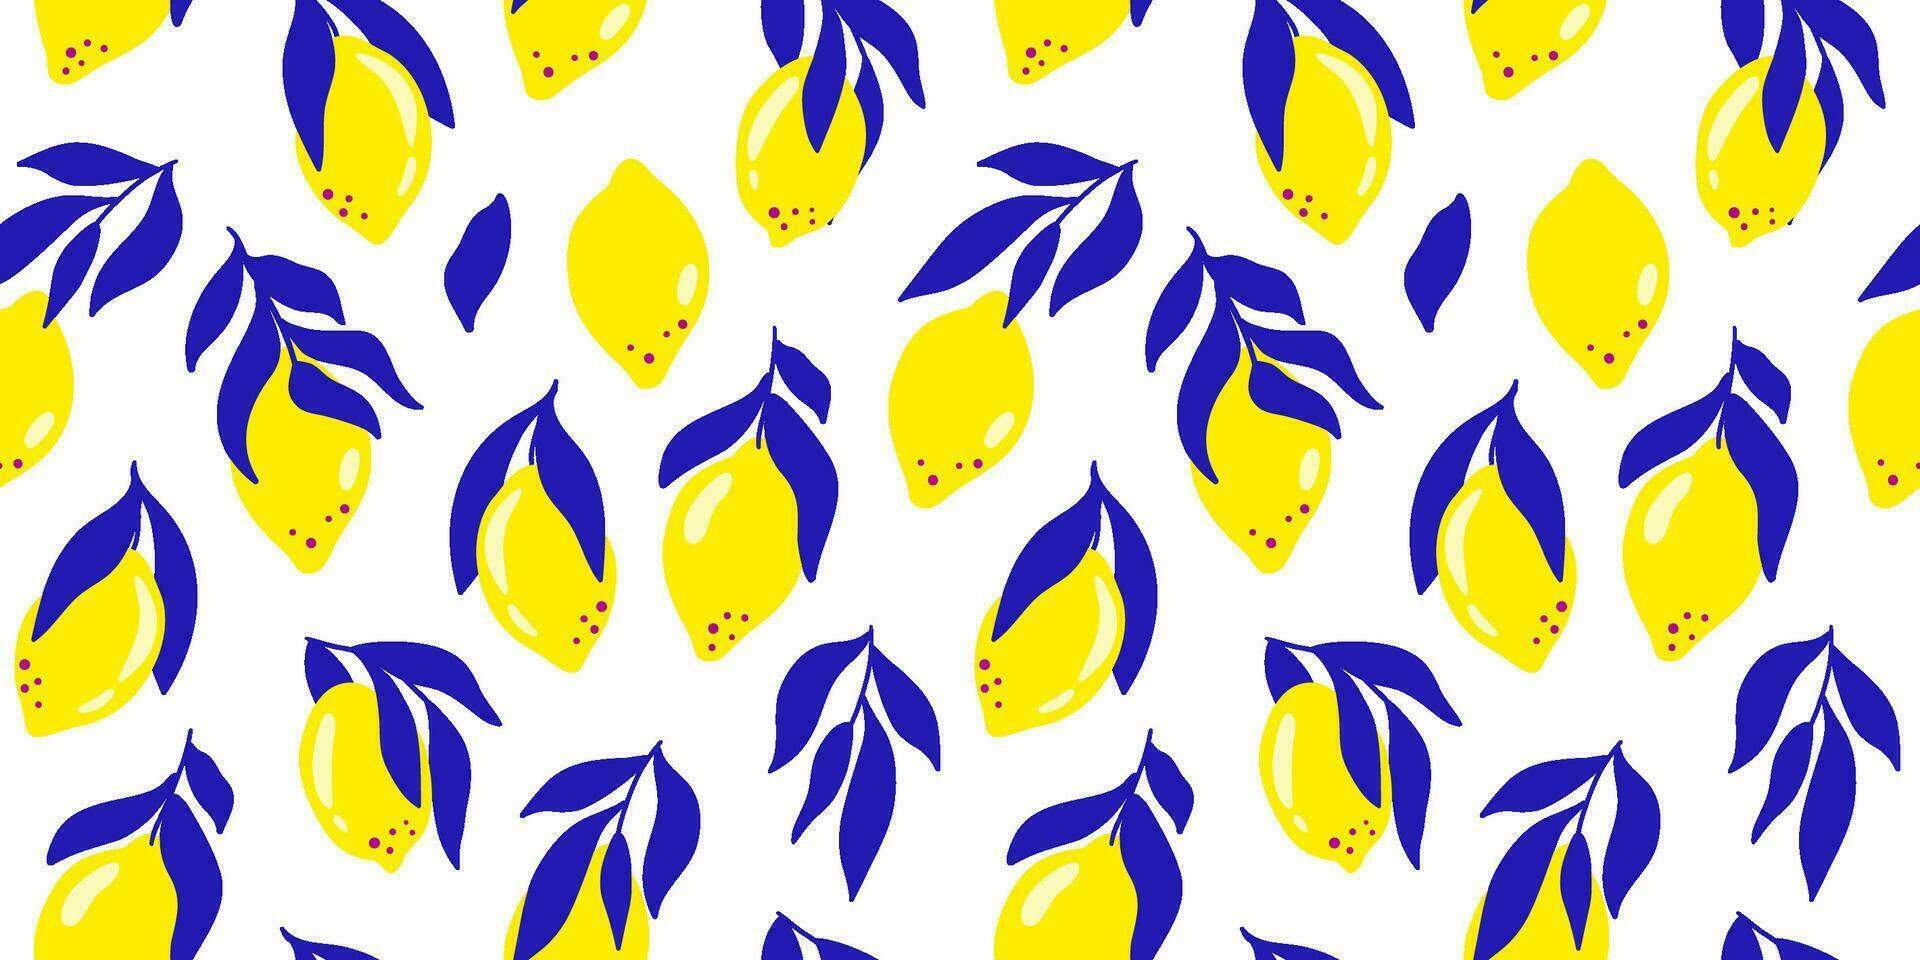 Zitrone Obst nahtlos Muster im abstrakt matisse Stil. tropisch Sommer- Obst von Gelb Zitrus, Blau Kurve Blätter, frisch Obst drucken. Hand gezeichnet Vektor Stoff Design, Küche Textil, Essen Hintergrund.